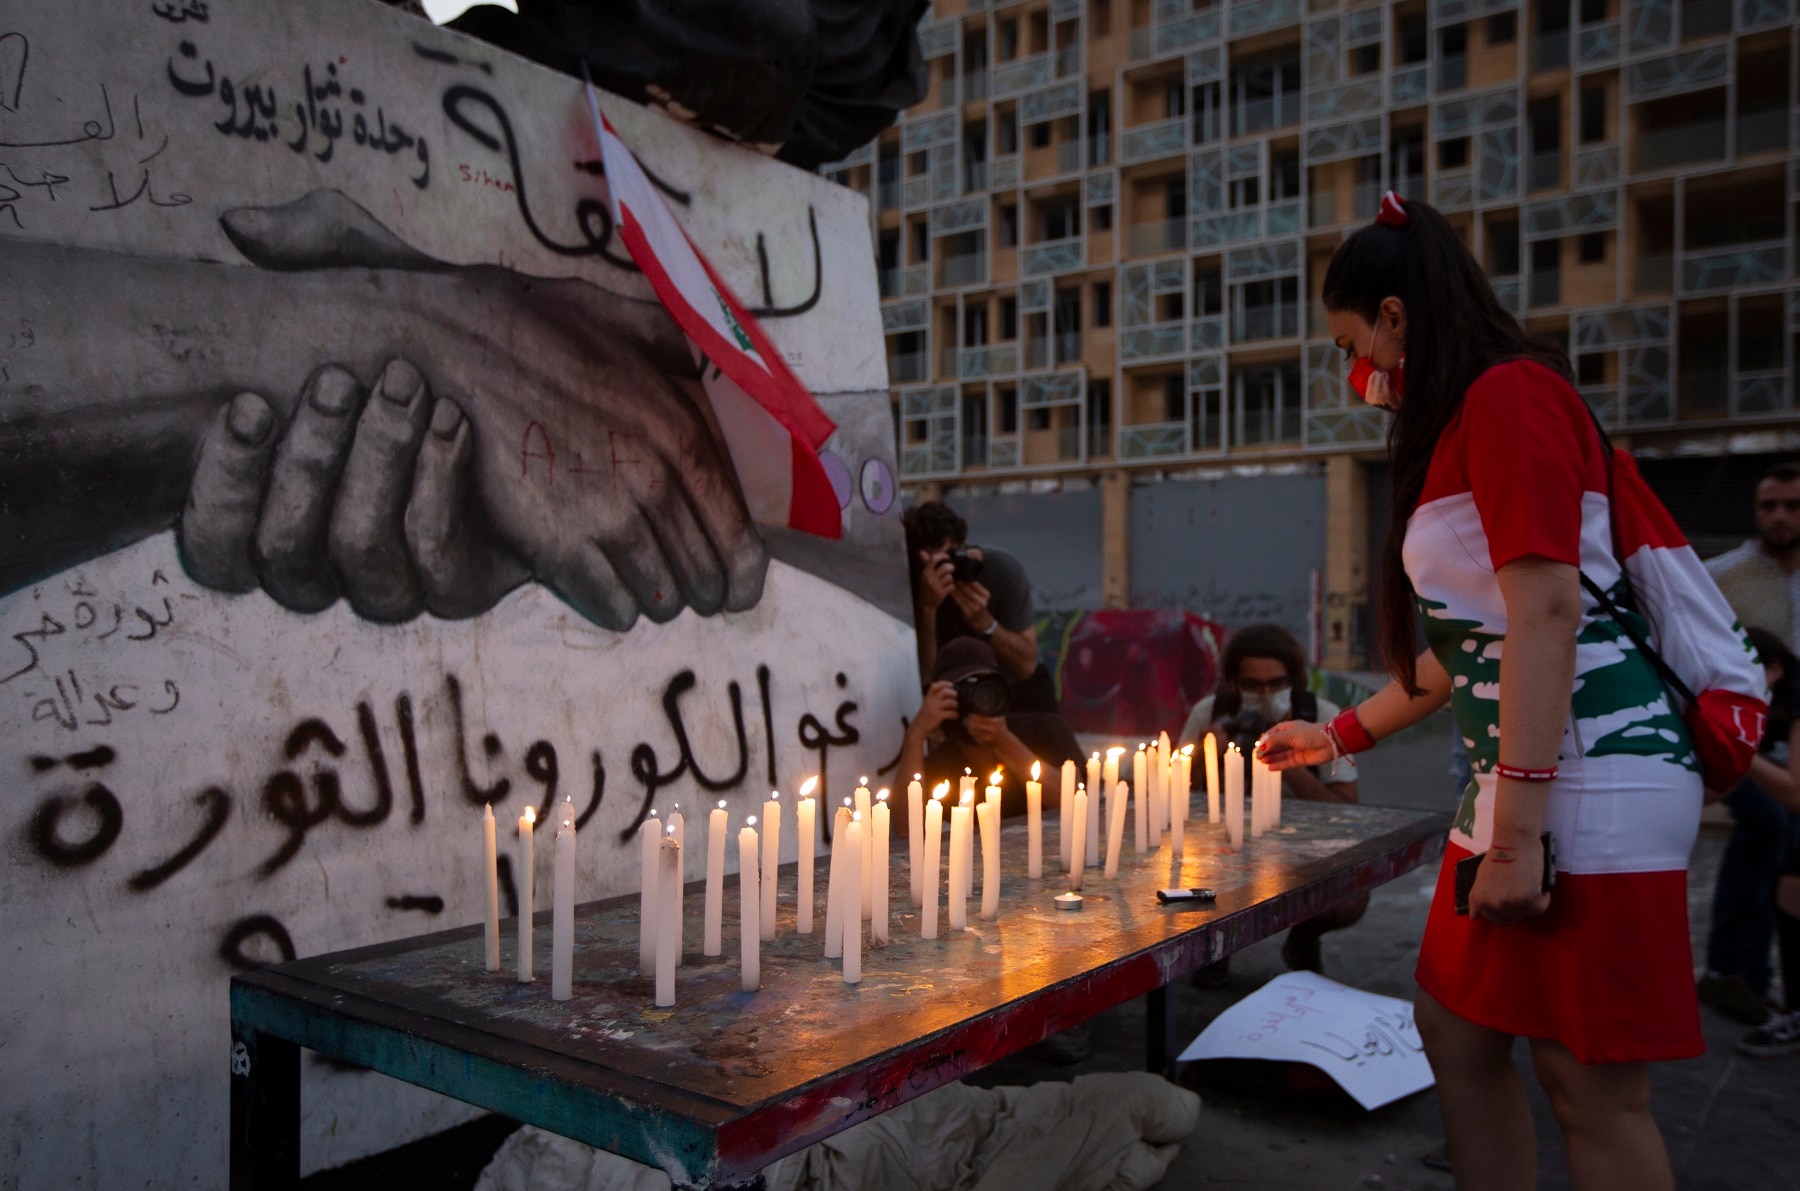 وقفة احتجاجية على ضوء الشموع بمناسبة مرور شهر على انفجار ميناء بيروت.